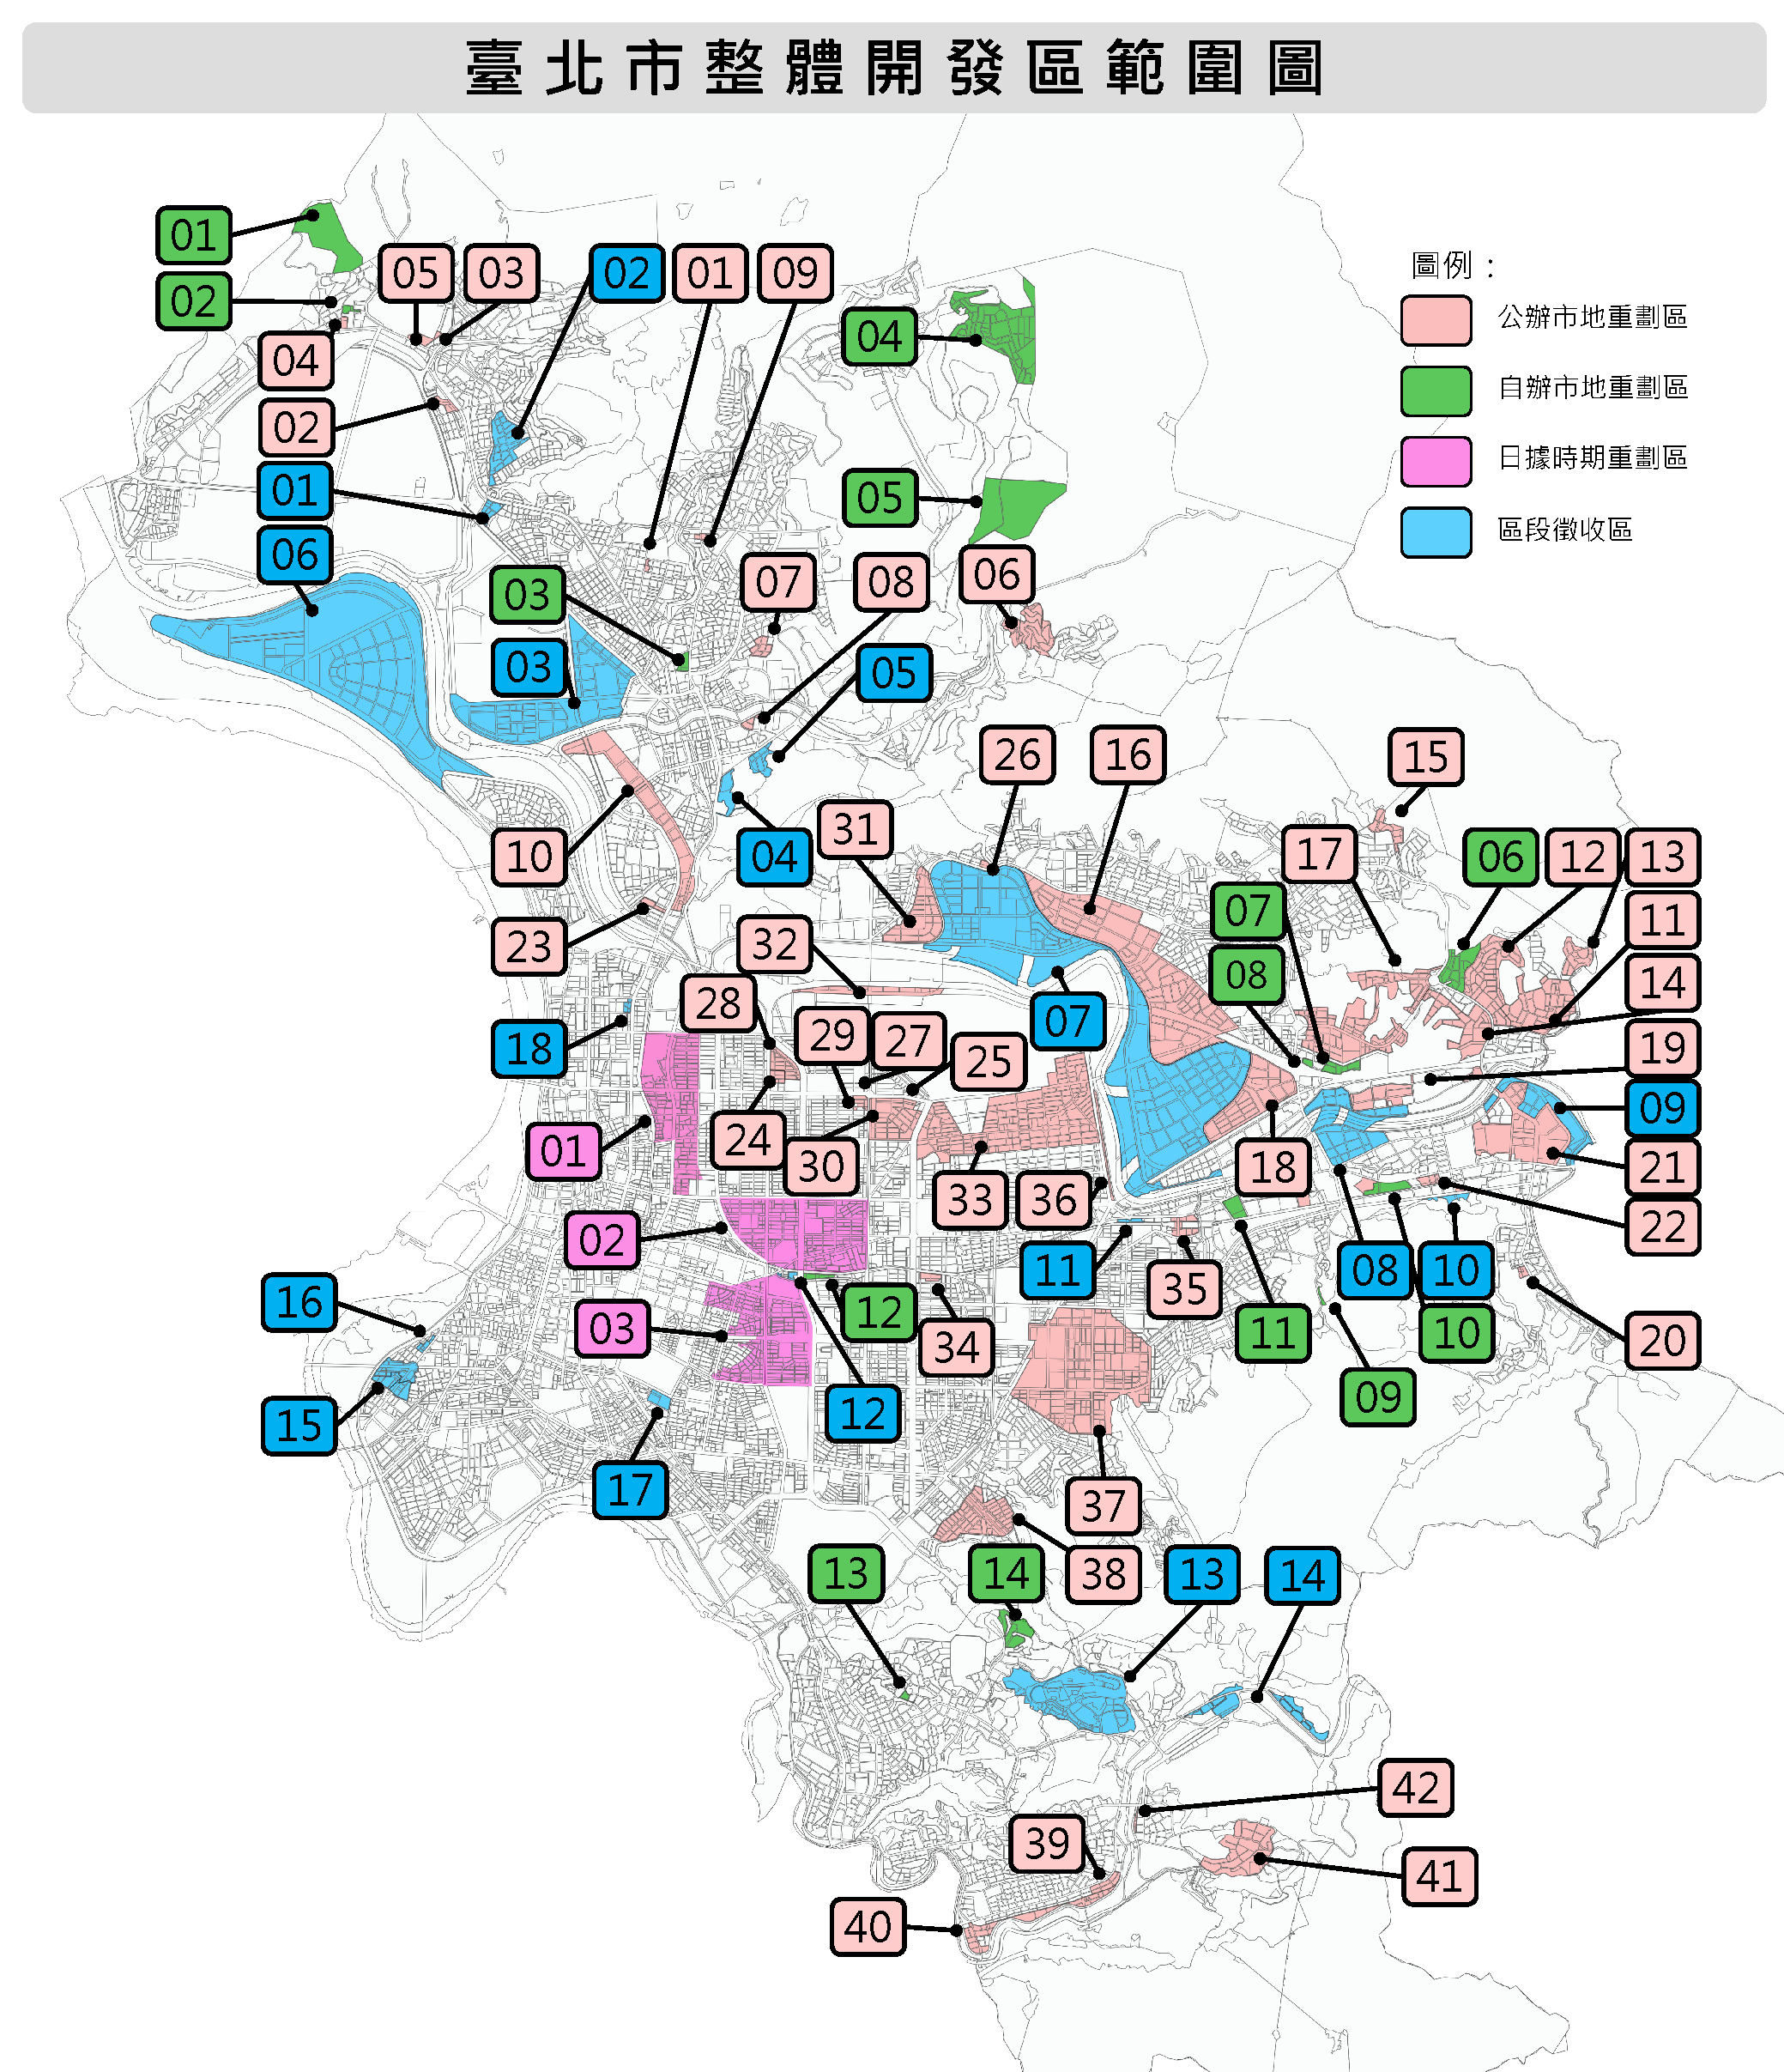 臺北市整體開發區範圍圖